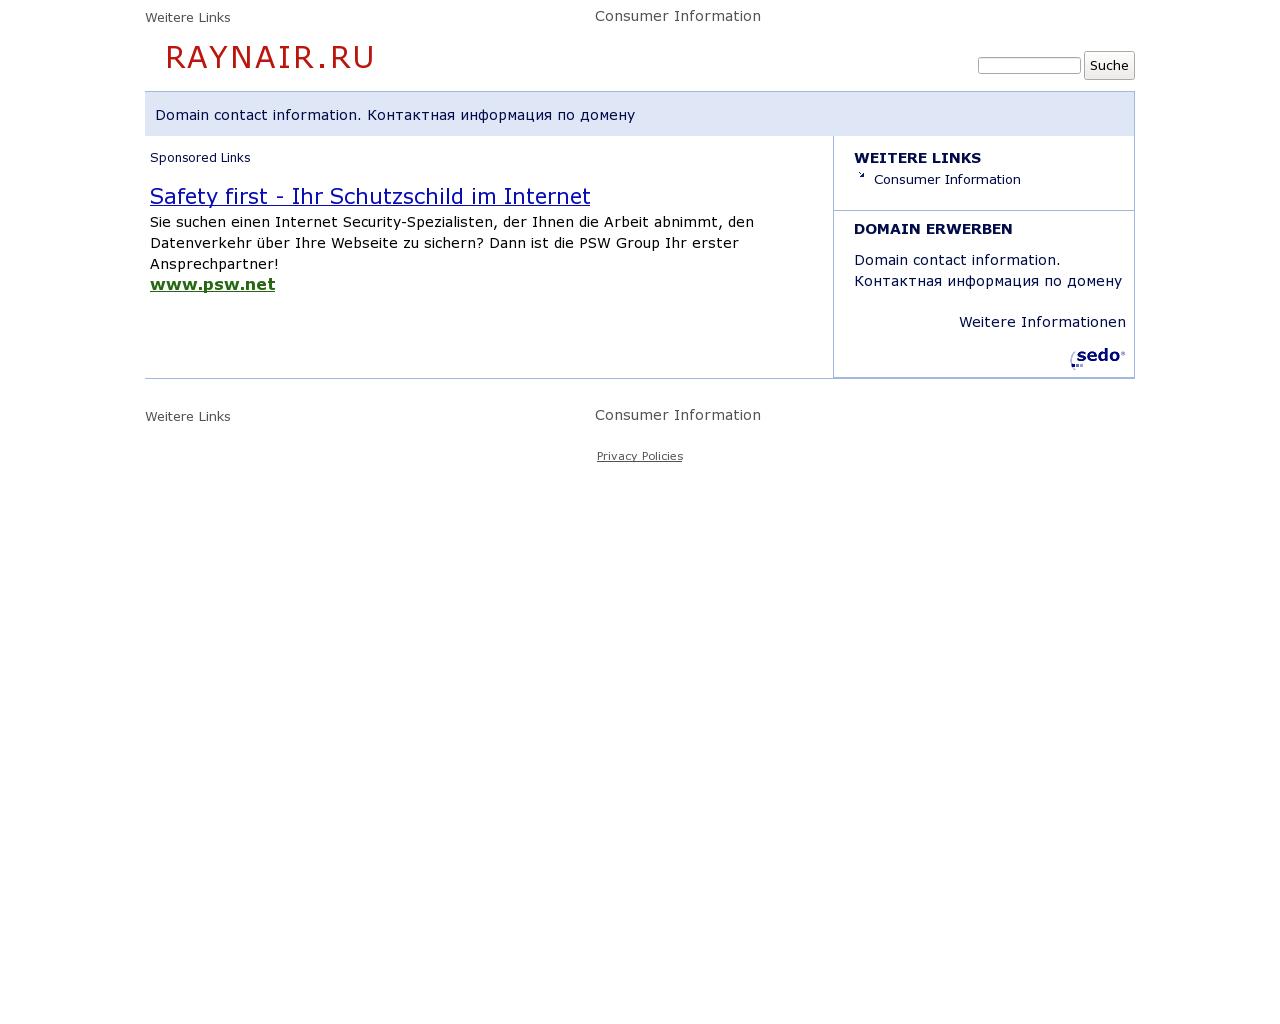 Изображение сайта raynair.ru в разрешении 1280x1024